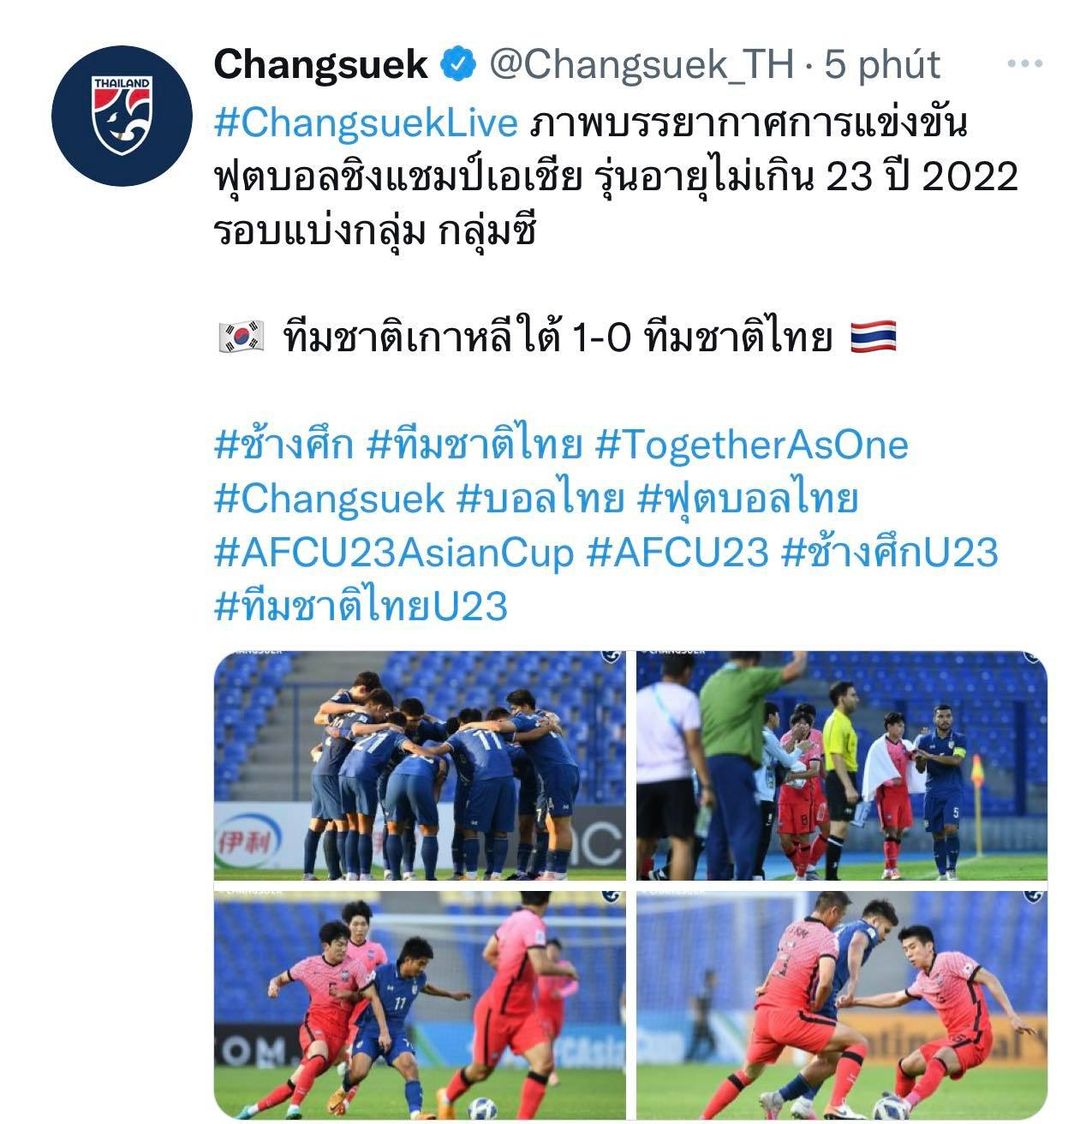 Trang fanpage Changsuek trên facebook của tuyển Thái Lan chặn NHM Việt Nam. Trang Twitter vẫn hoạt động bình thường  